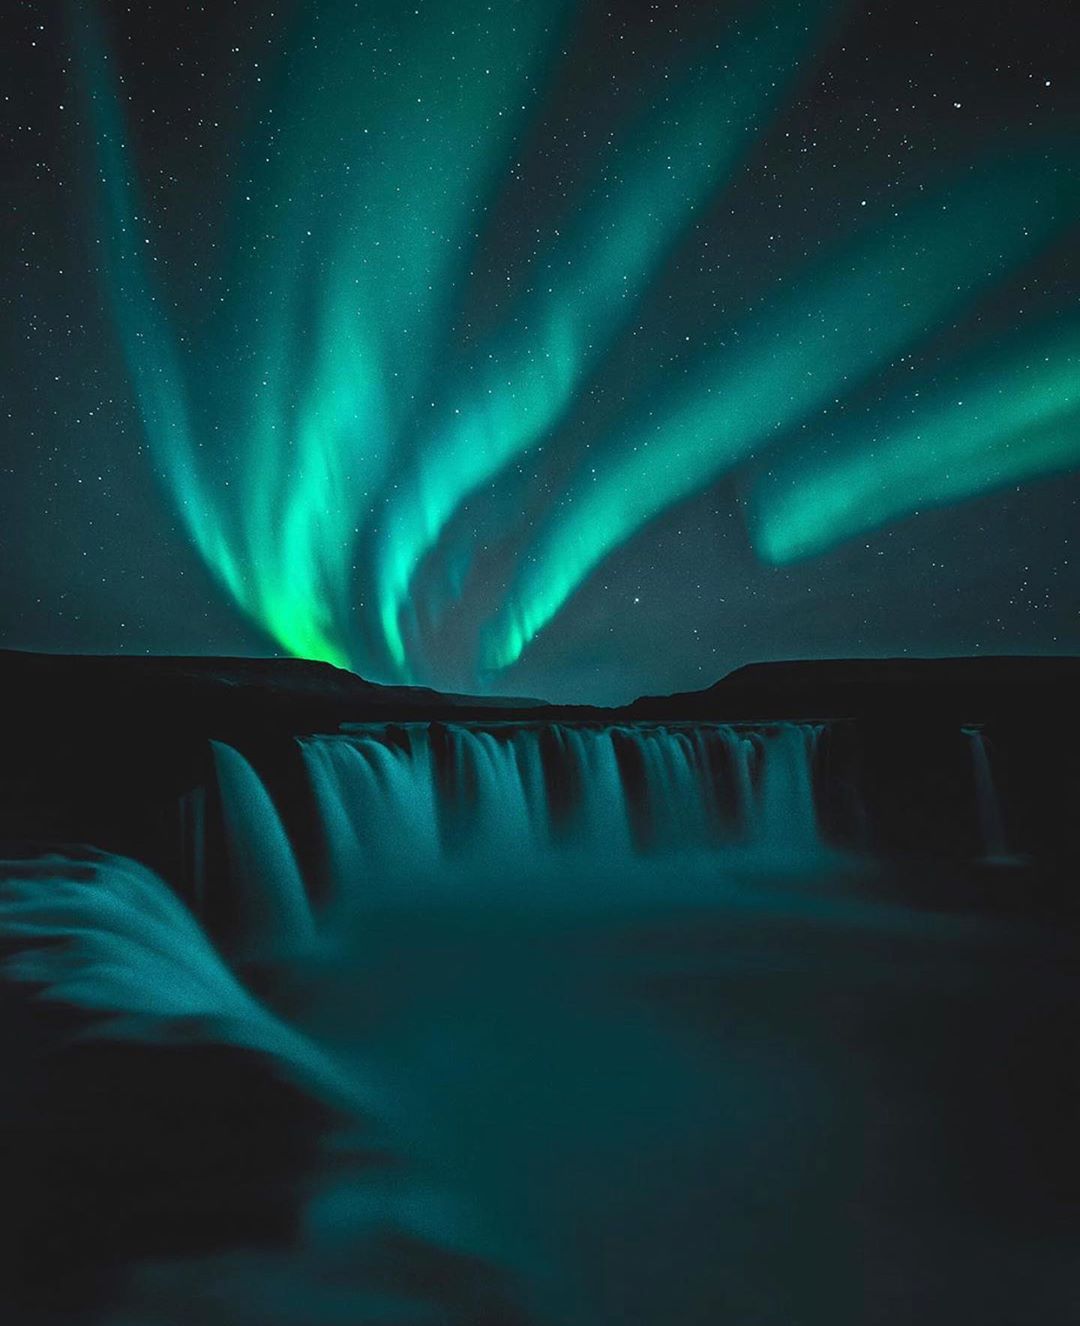  极光与瀑布，来自摄影师Garoar Olafsson。 